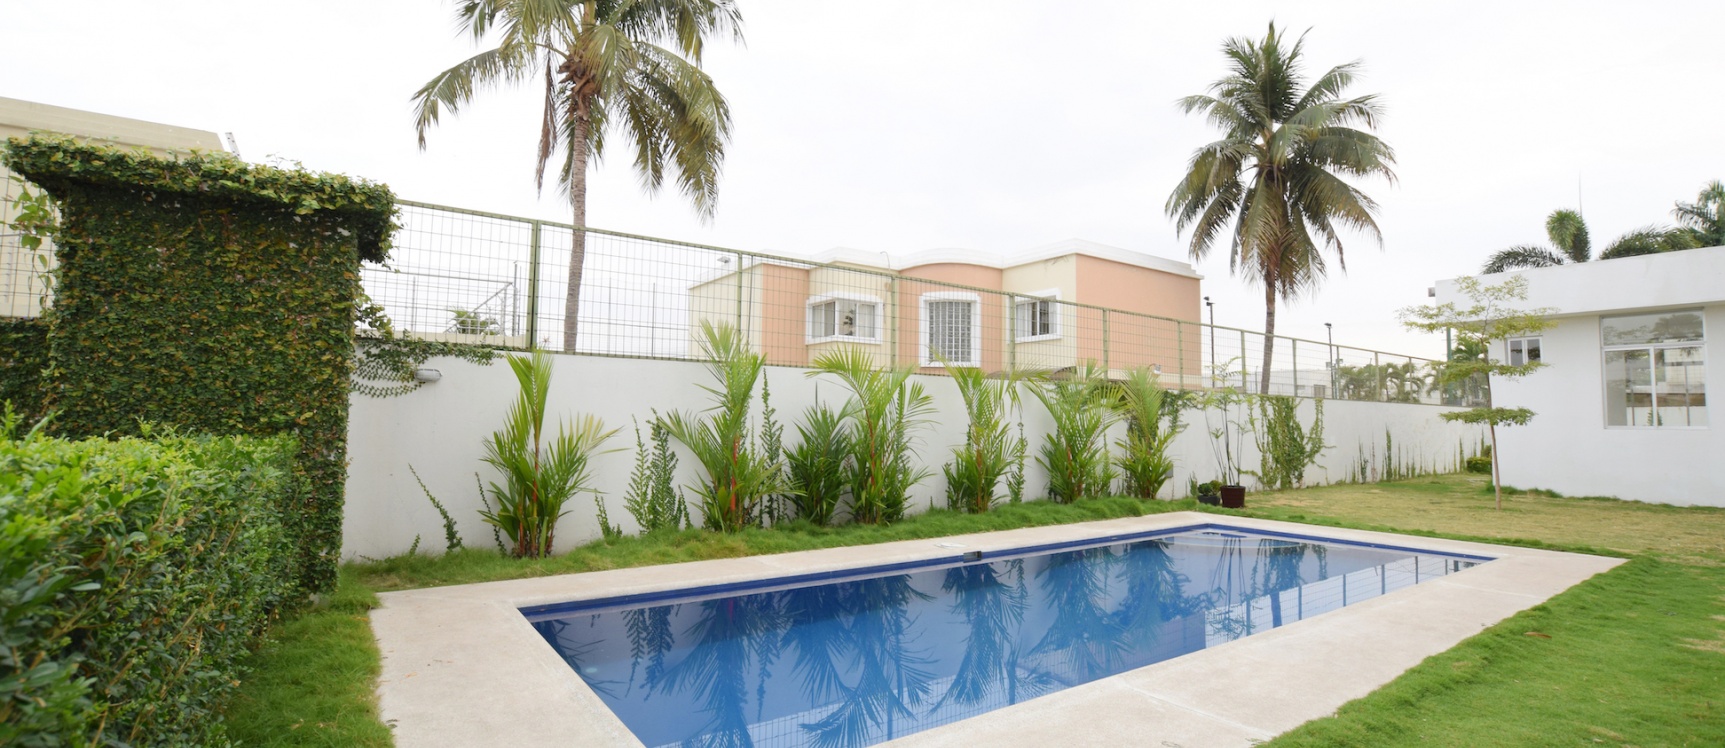 GeoBienes - Departamento en venta ubicado en  Montelimar II, Vía Samborondón - Plusvalia Guayaquil Casas de venta y alquiler Inmobiliaria Ecuador